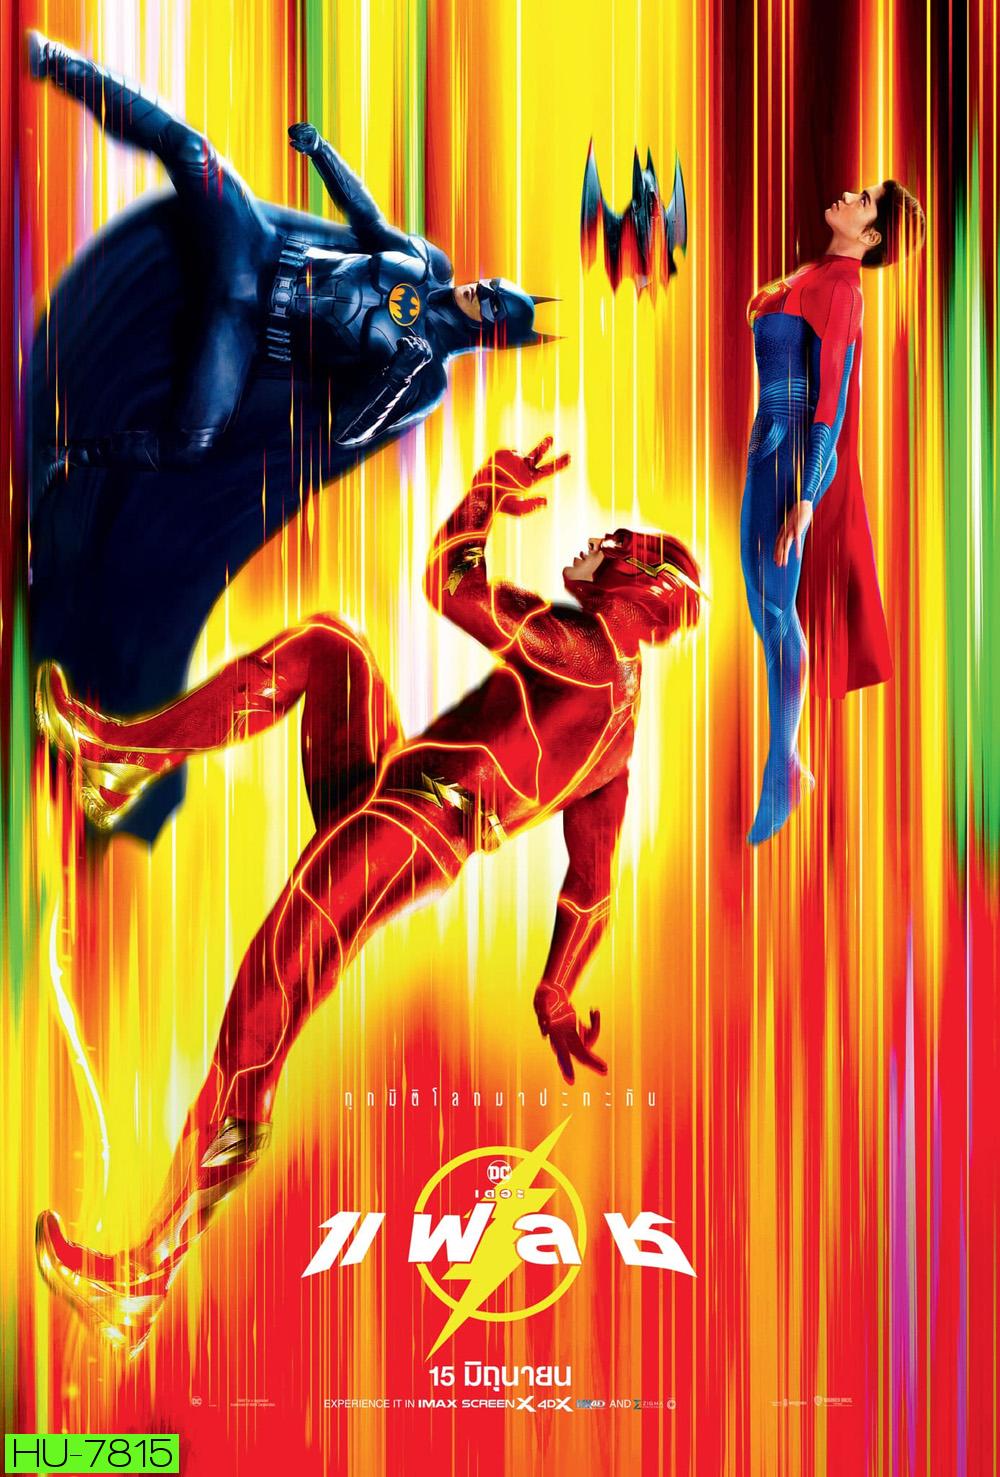 เดอะ แฟลช (2023) The Flash